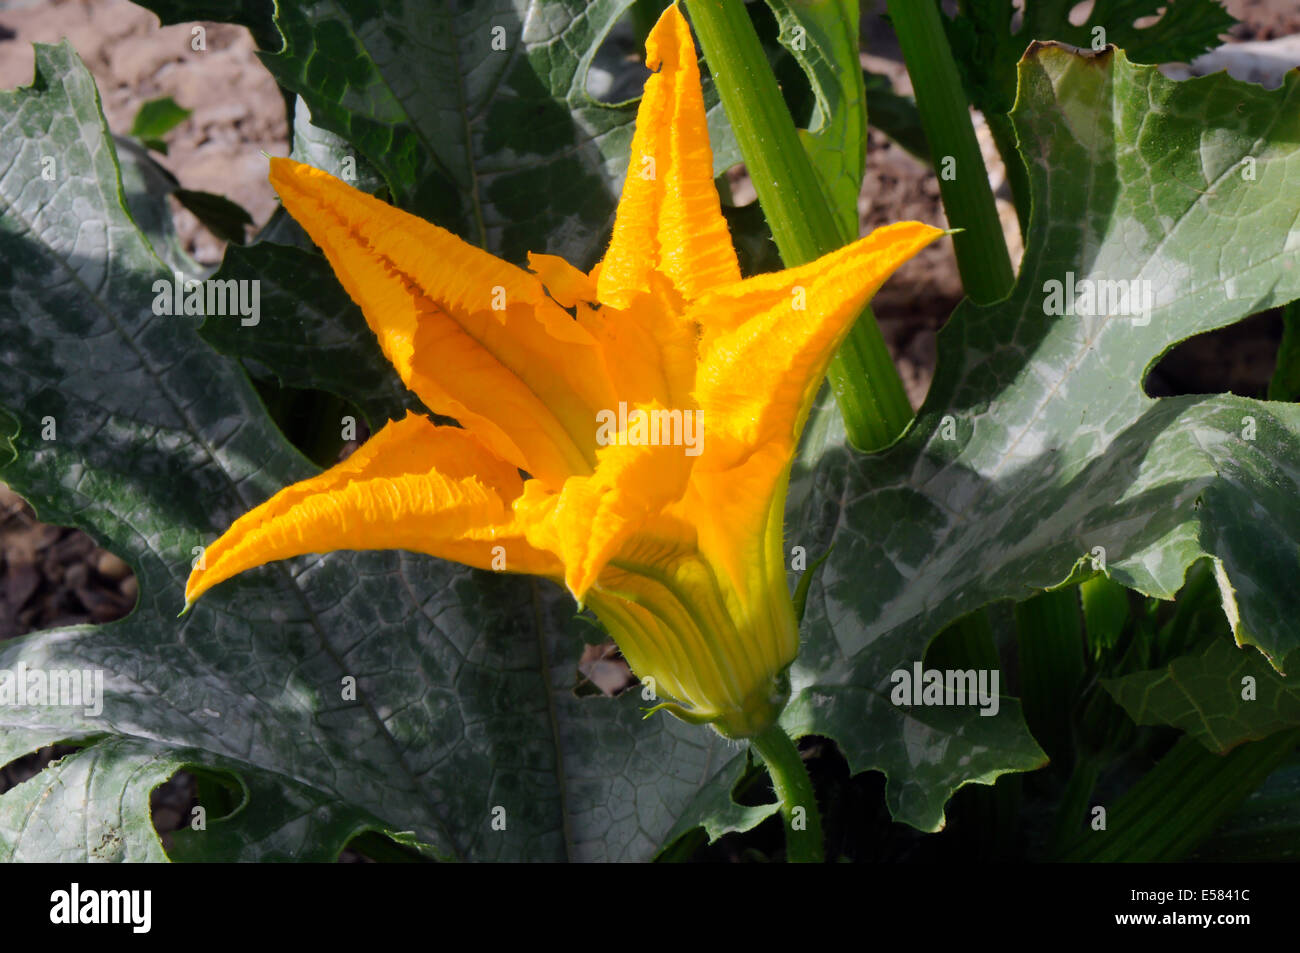 Gelbe Zucchini (Zucchini) Blume Nahaufnahme.  Auch bekannt als Sommerkürbis Stockfoto